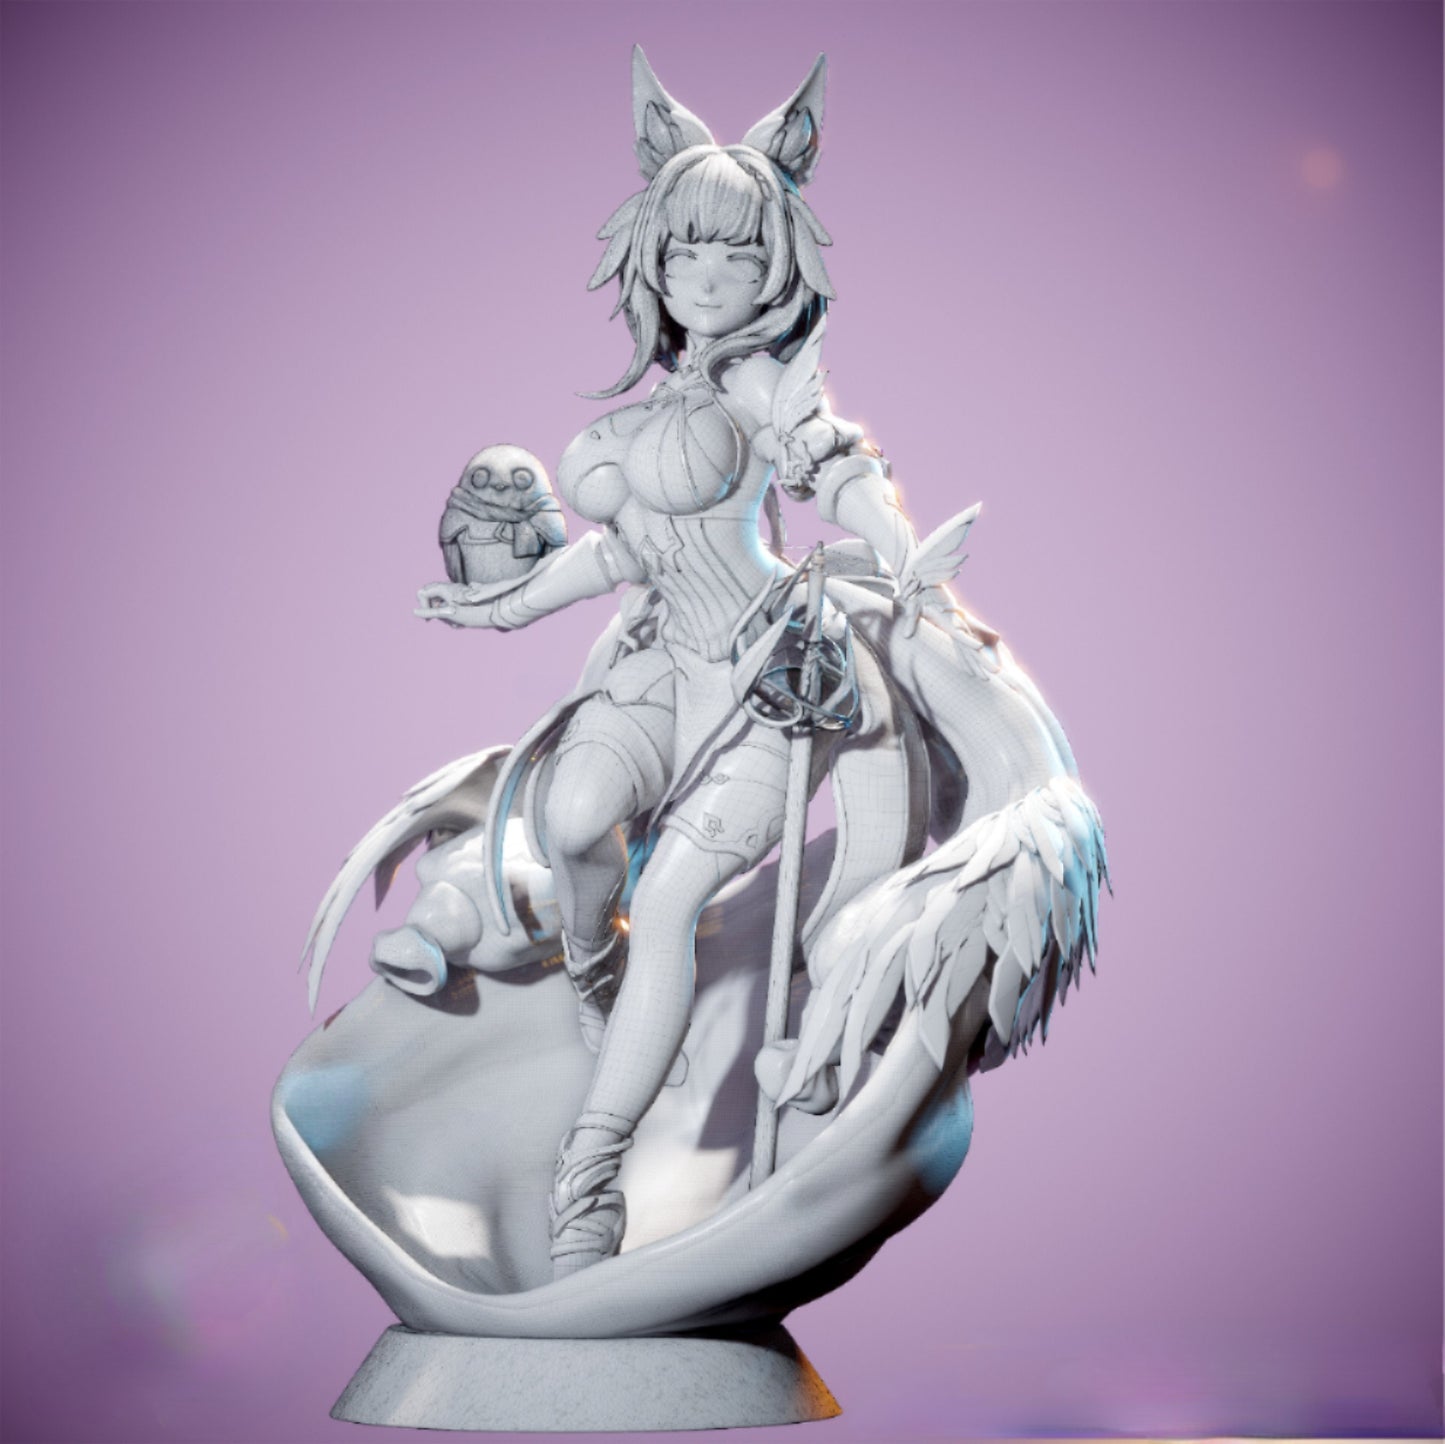 Cute Bunny Girl STL File 3D Printing Digital STL File Female Figure 0007